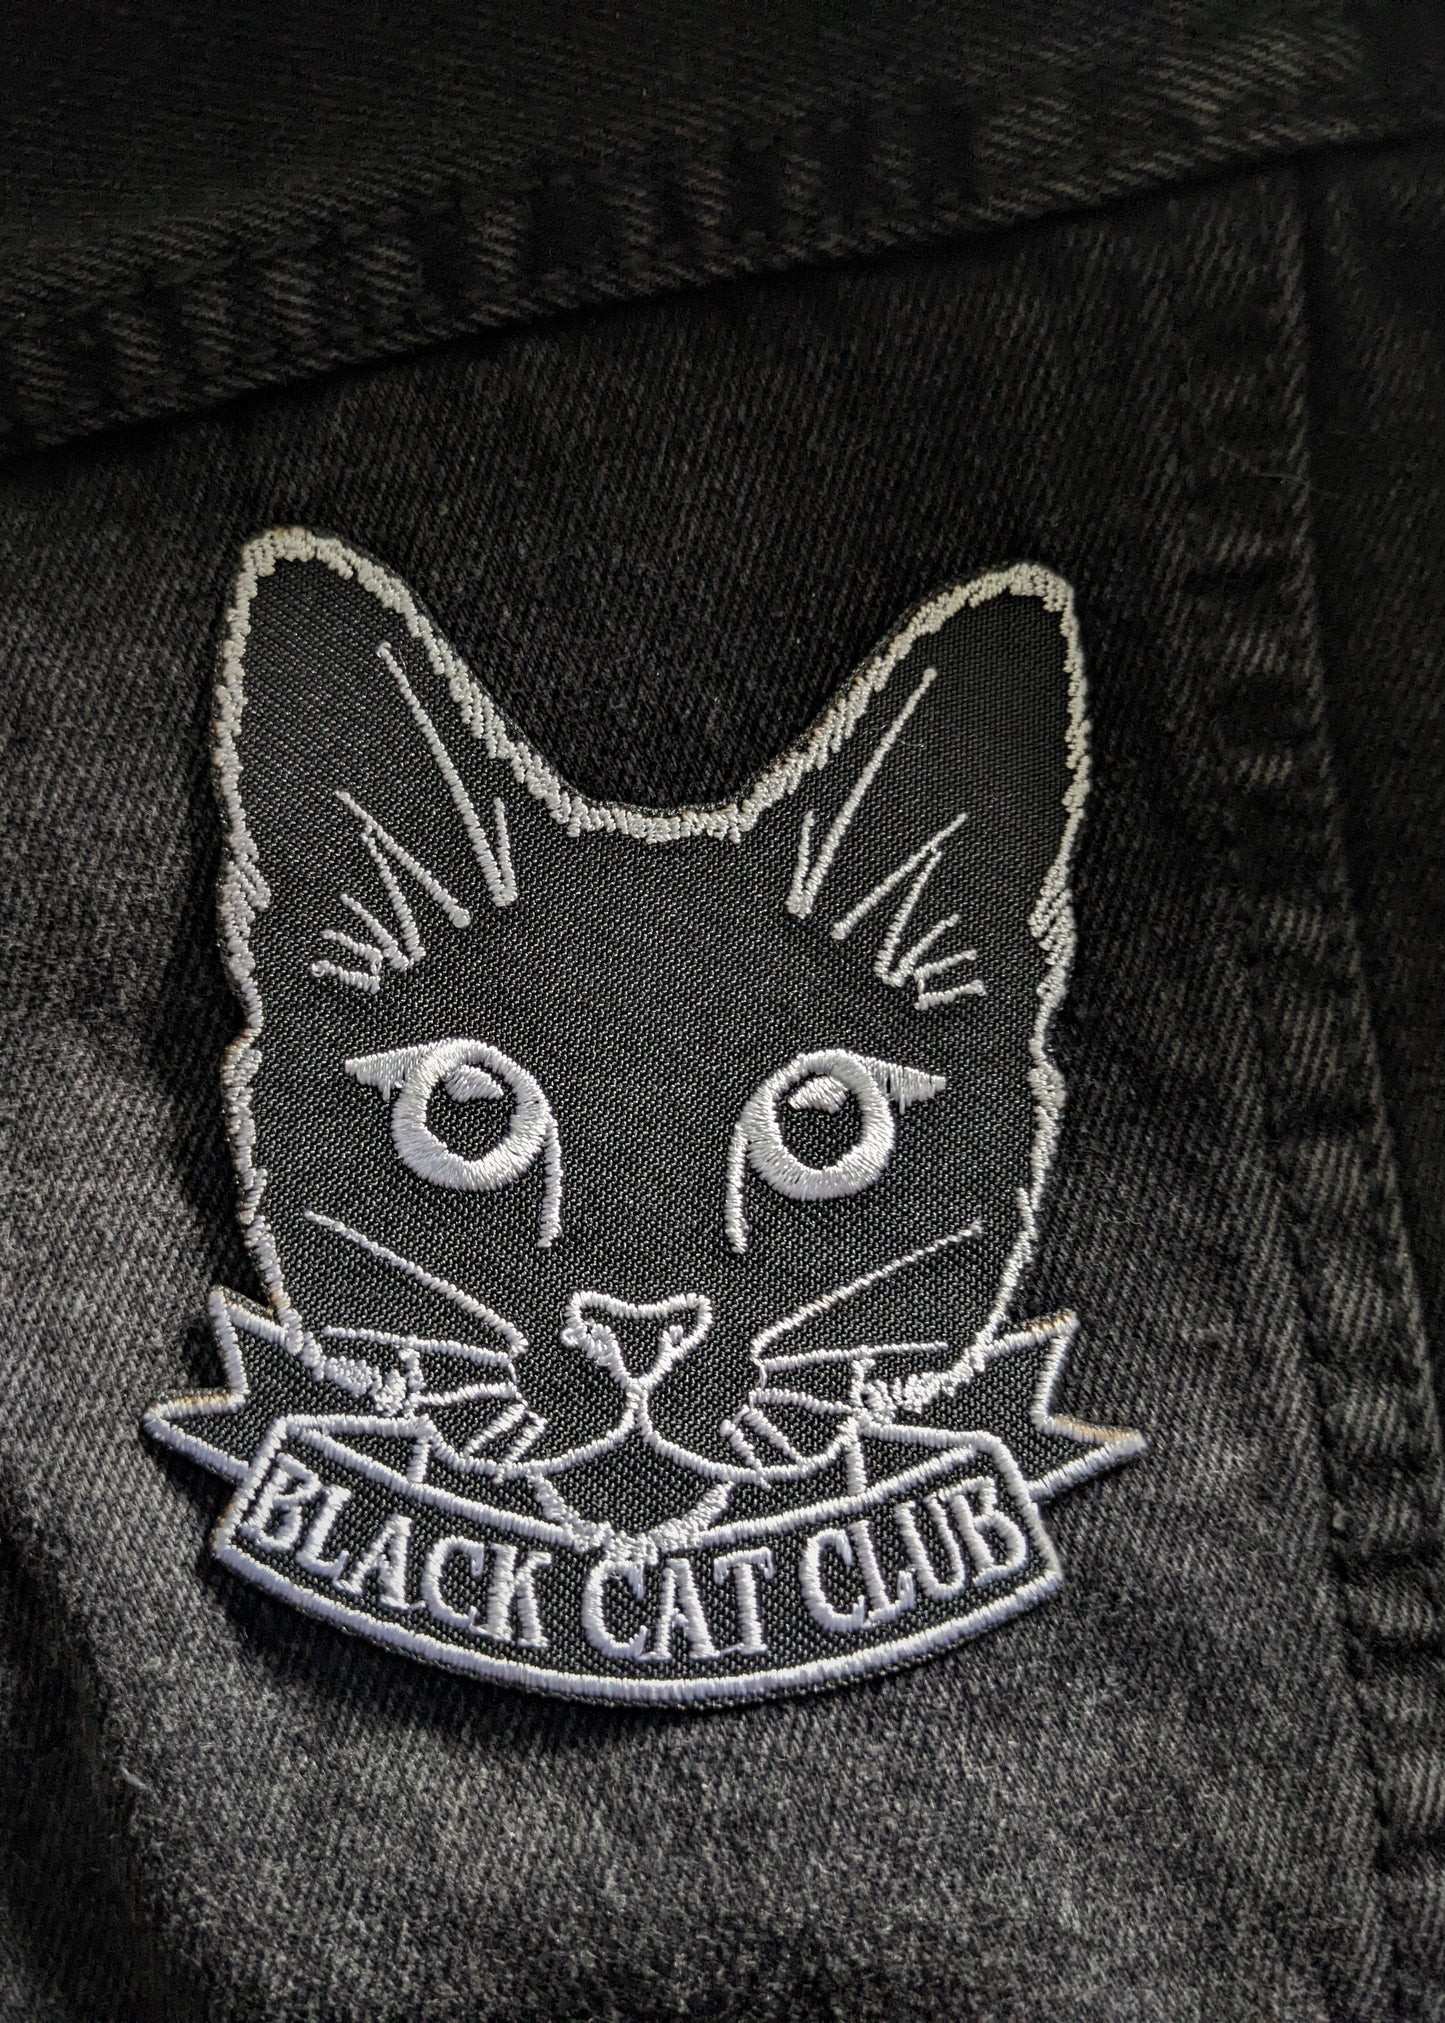 Black Cat Club Patch